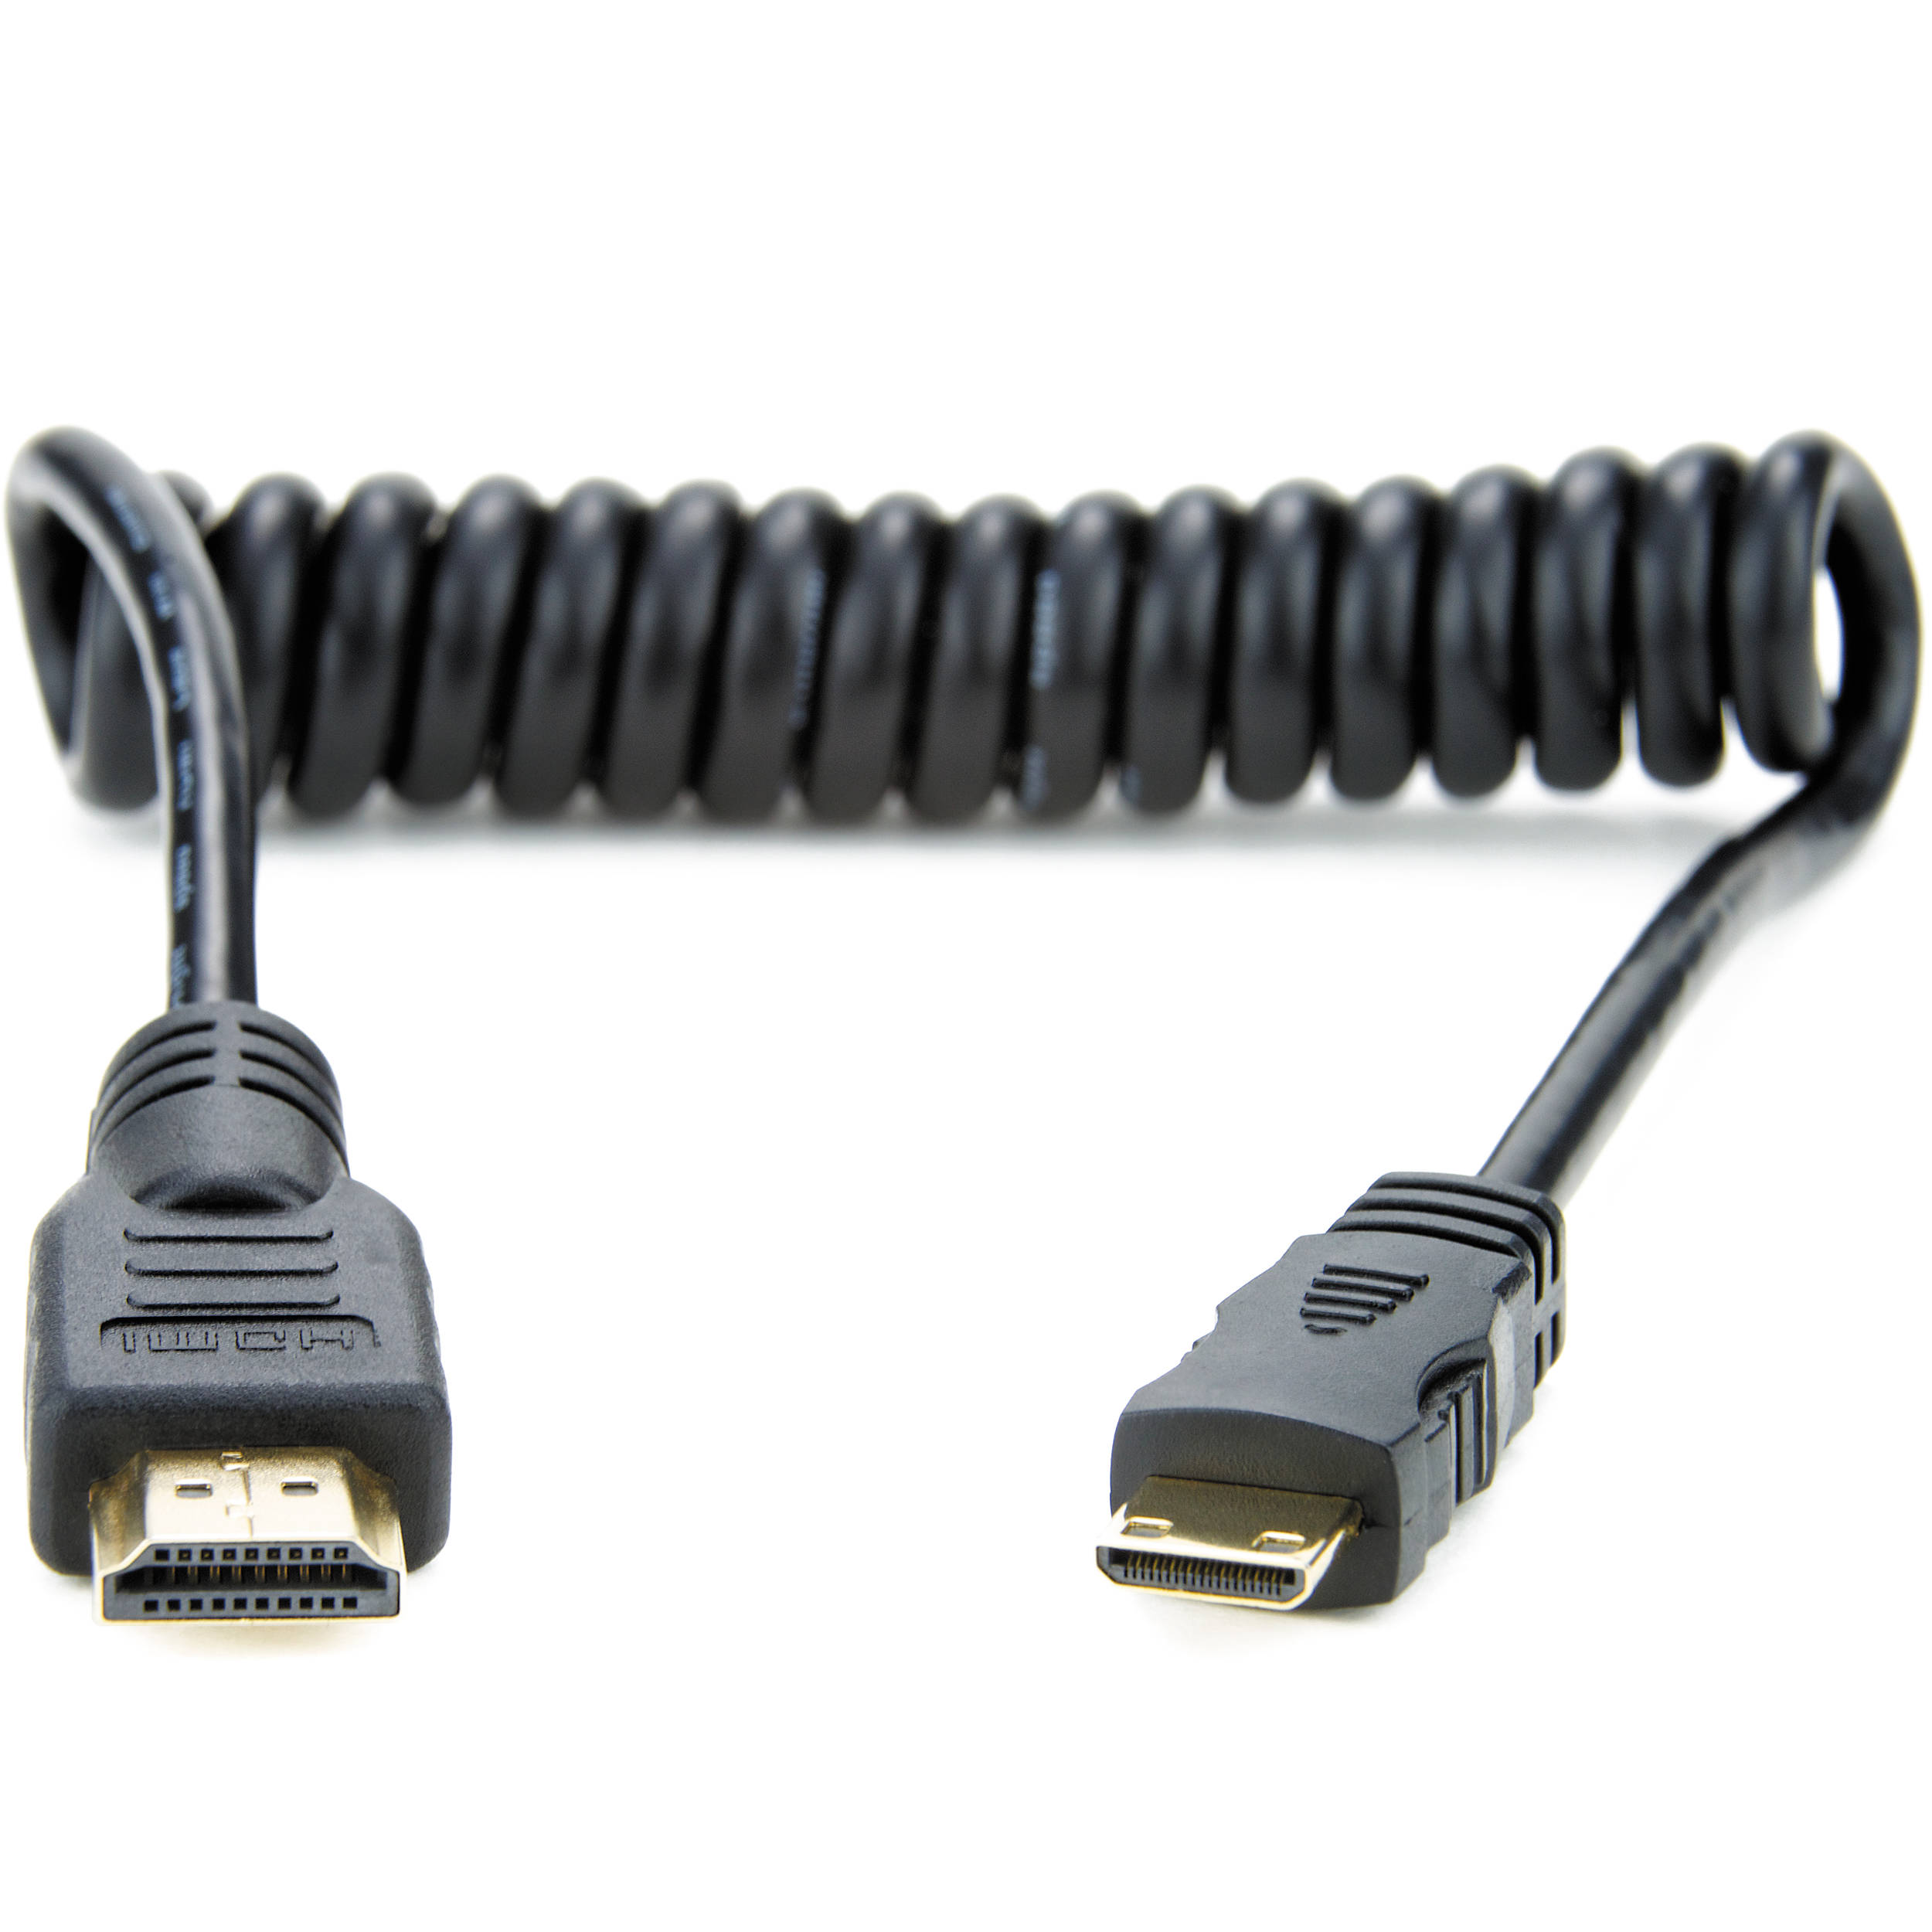 motif Formation invention Atomos cablu HDMI Mini-Mare 30cm Spiralat - F64.ro - F64.ro